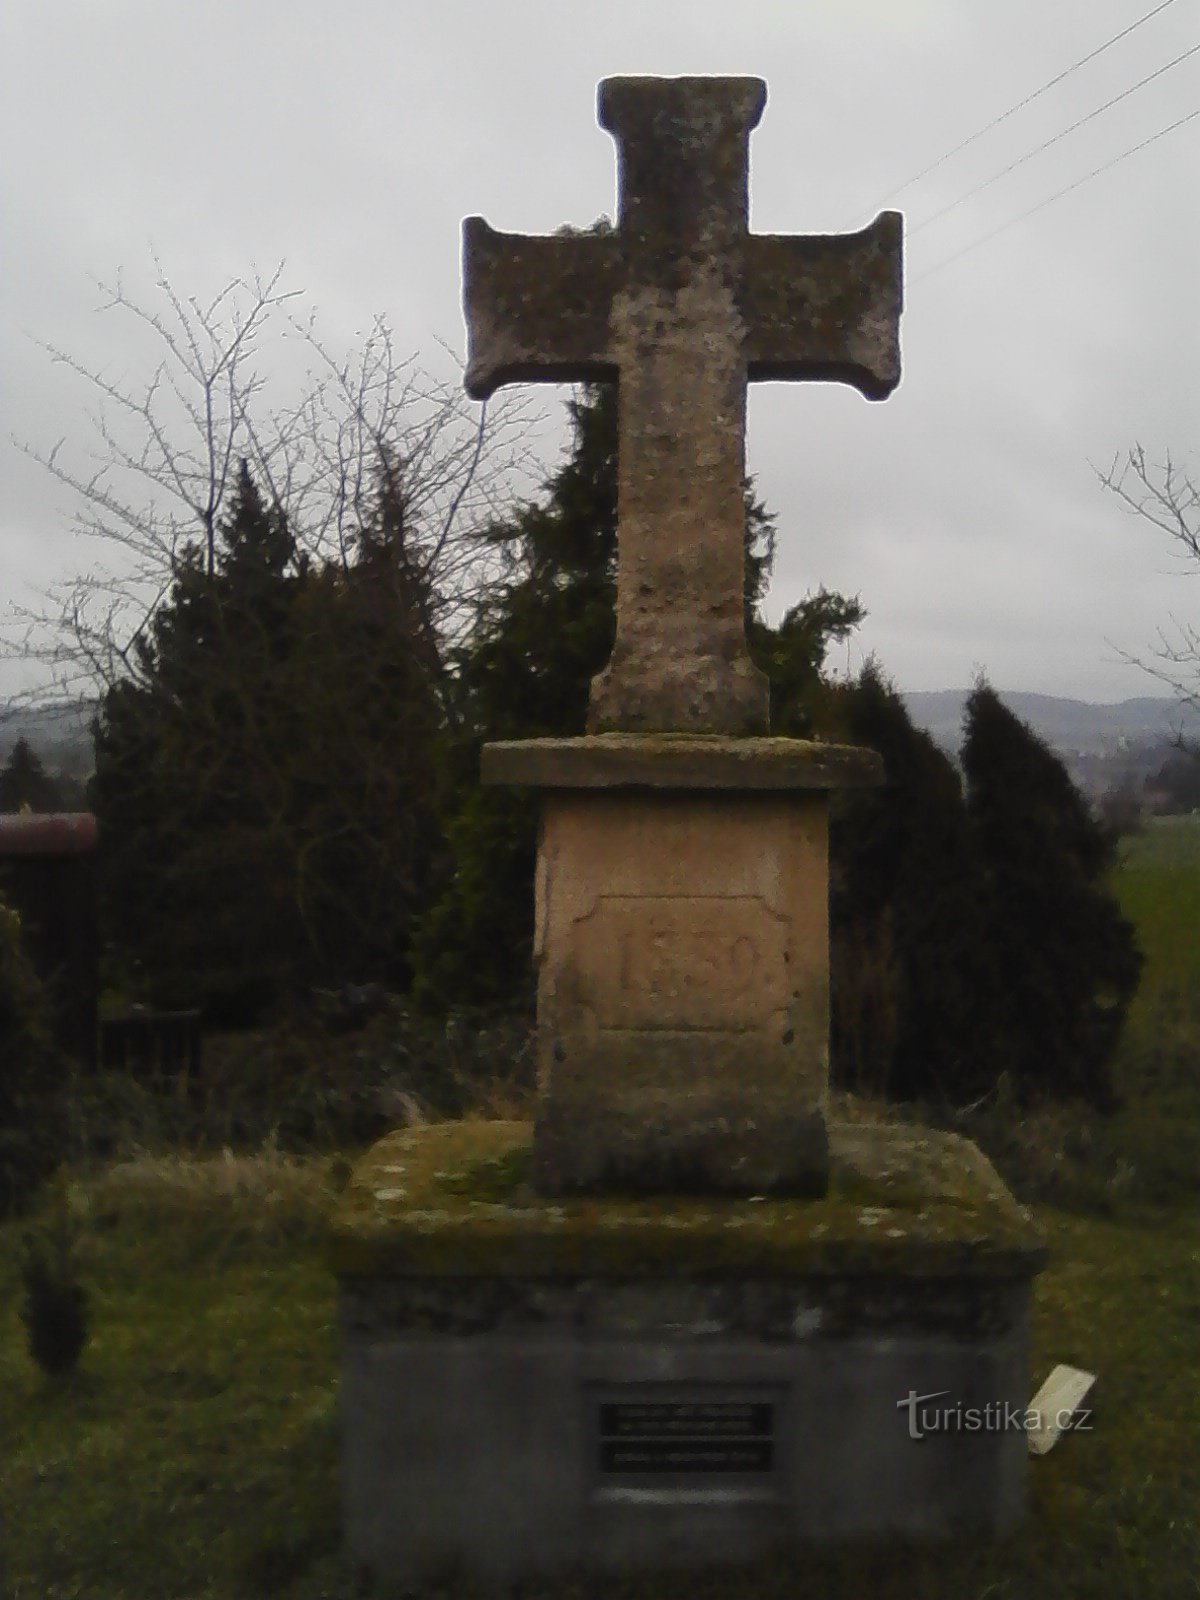 1. Stone cross from 1859 in Lidkovice.